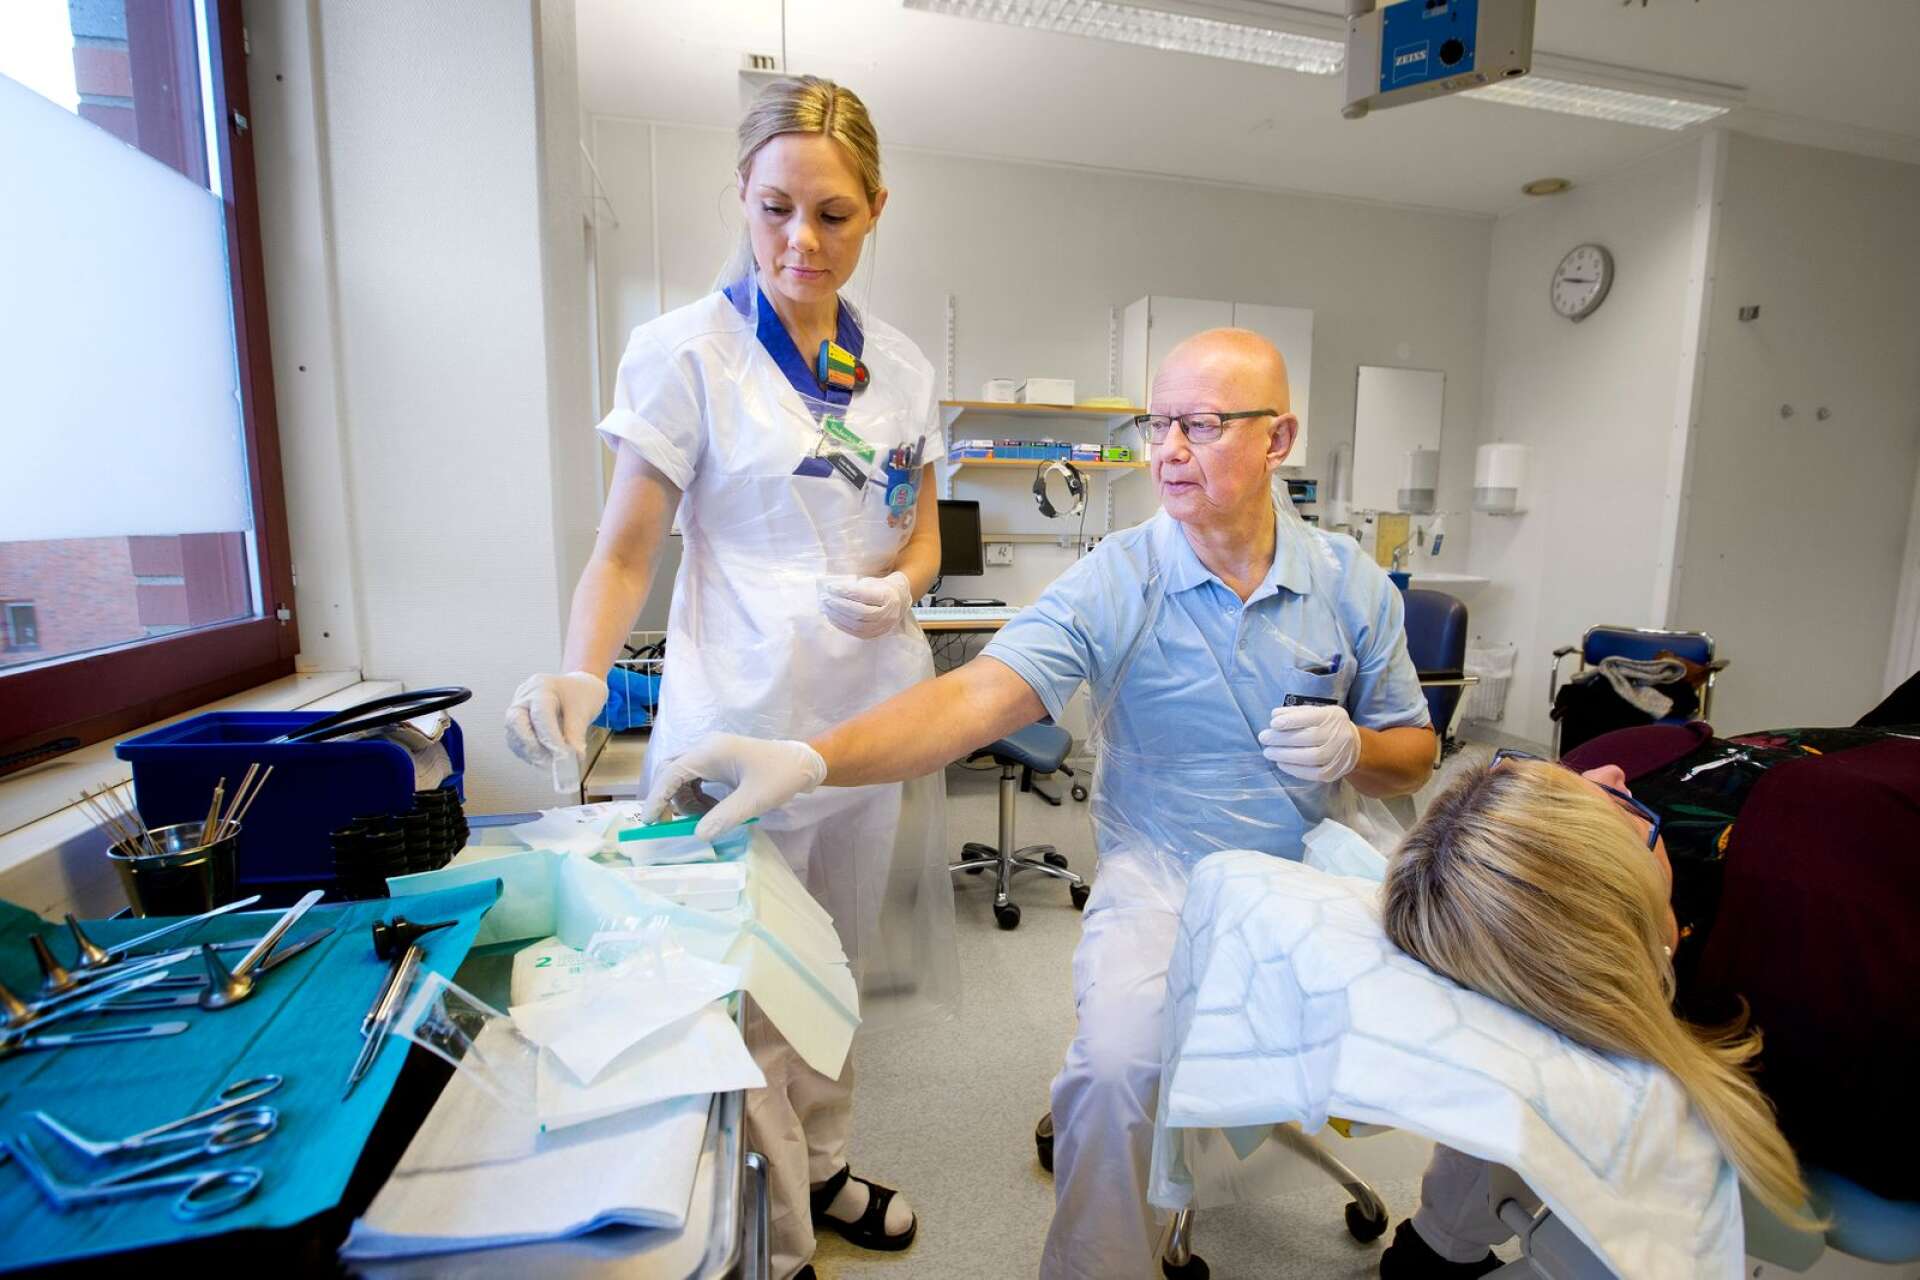 Undersköterska Lisa Westby och läkare Peter Stenbom hjälper patienten Lena Karlsson Carringer.